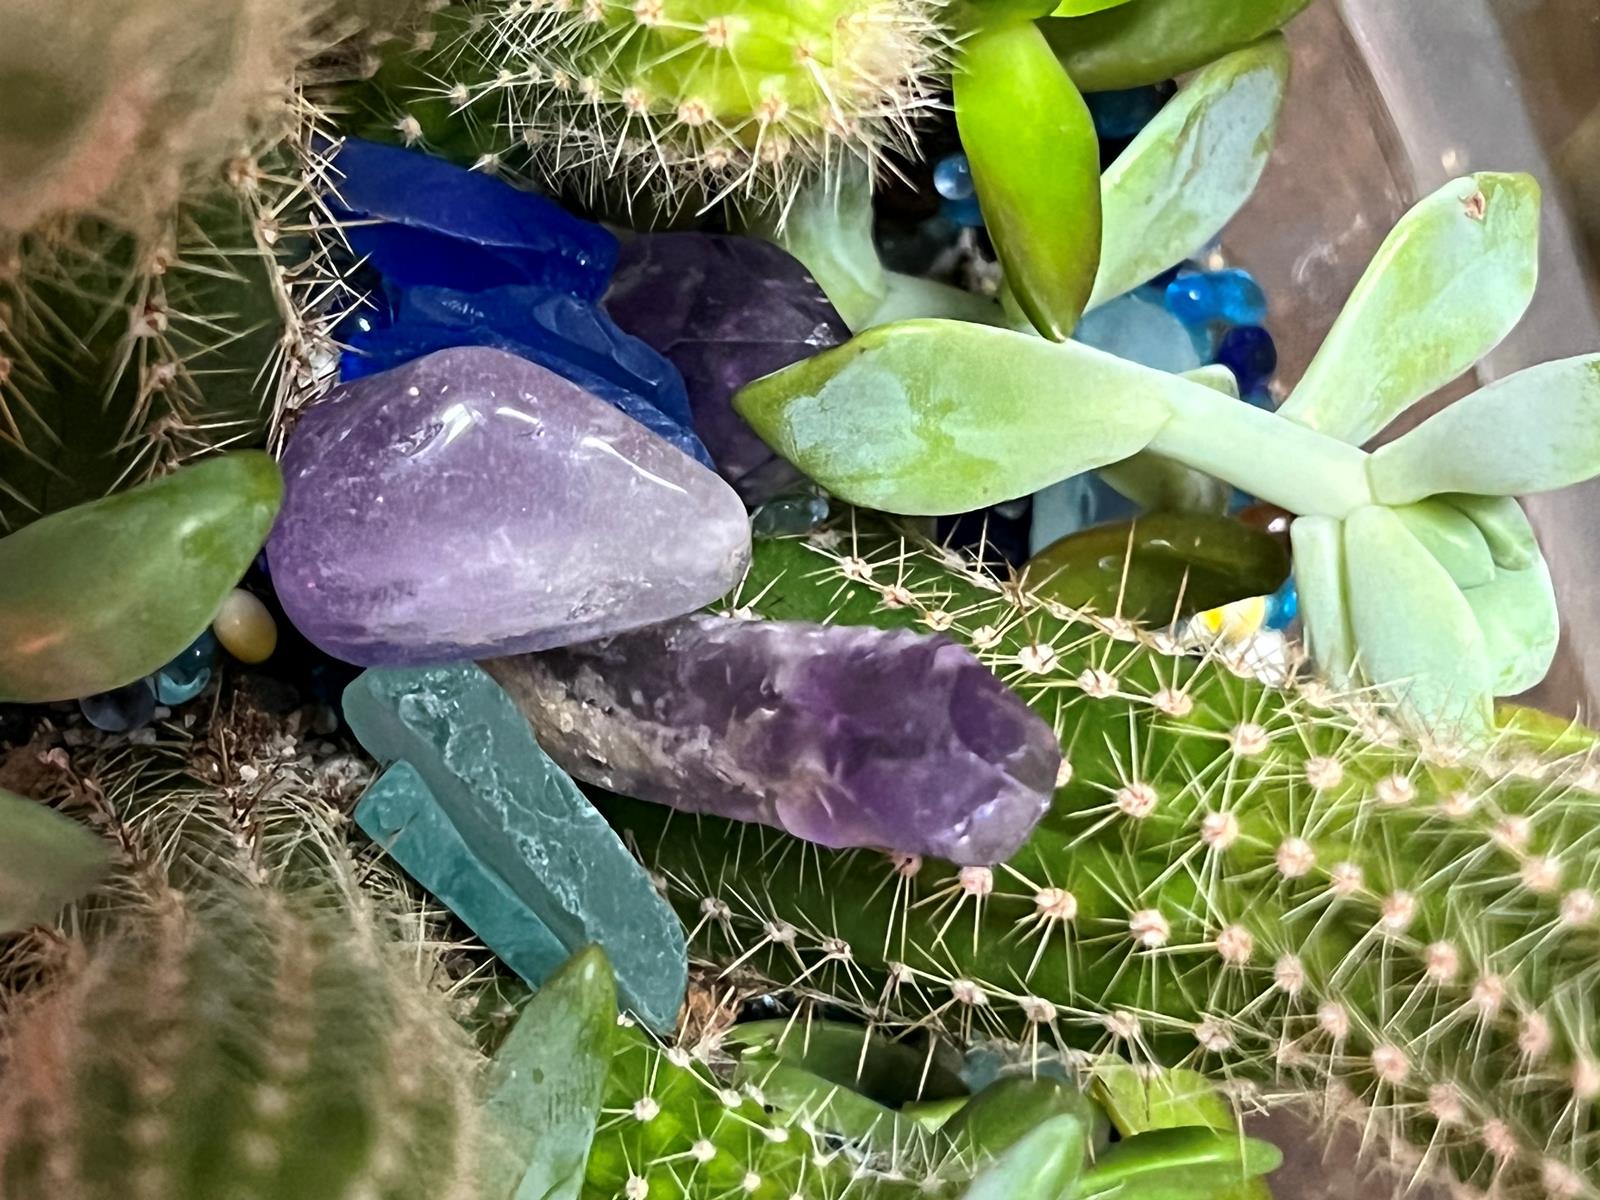 Cactus tropical w purple Chrystal succulent w blue stones  1